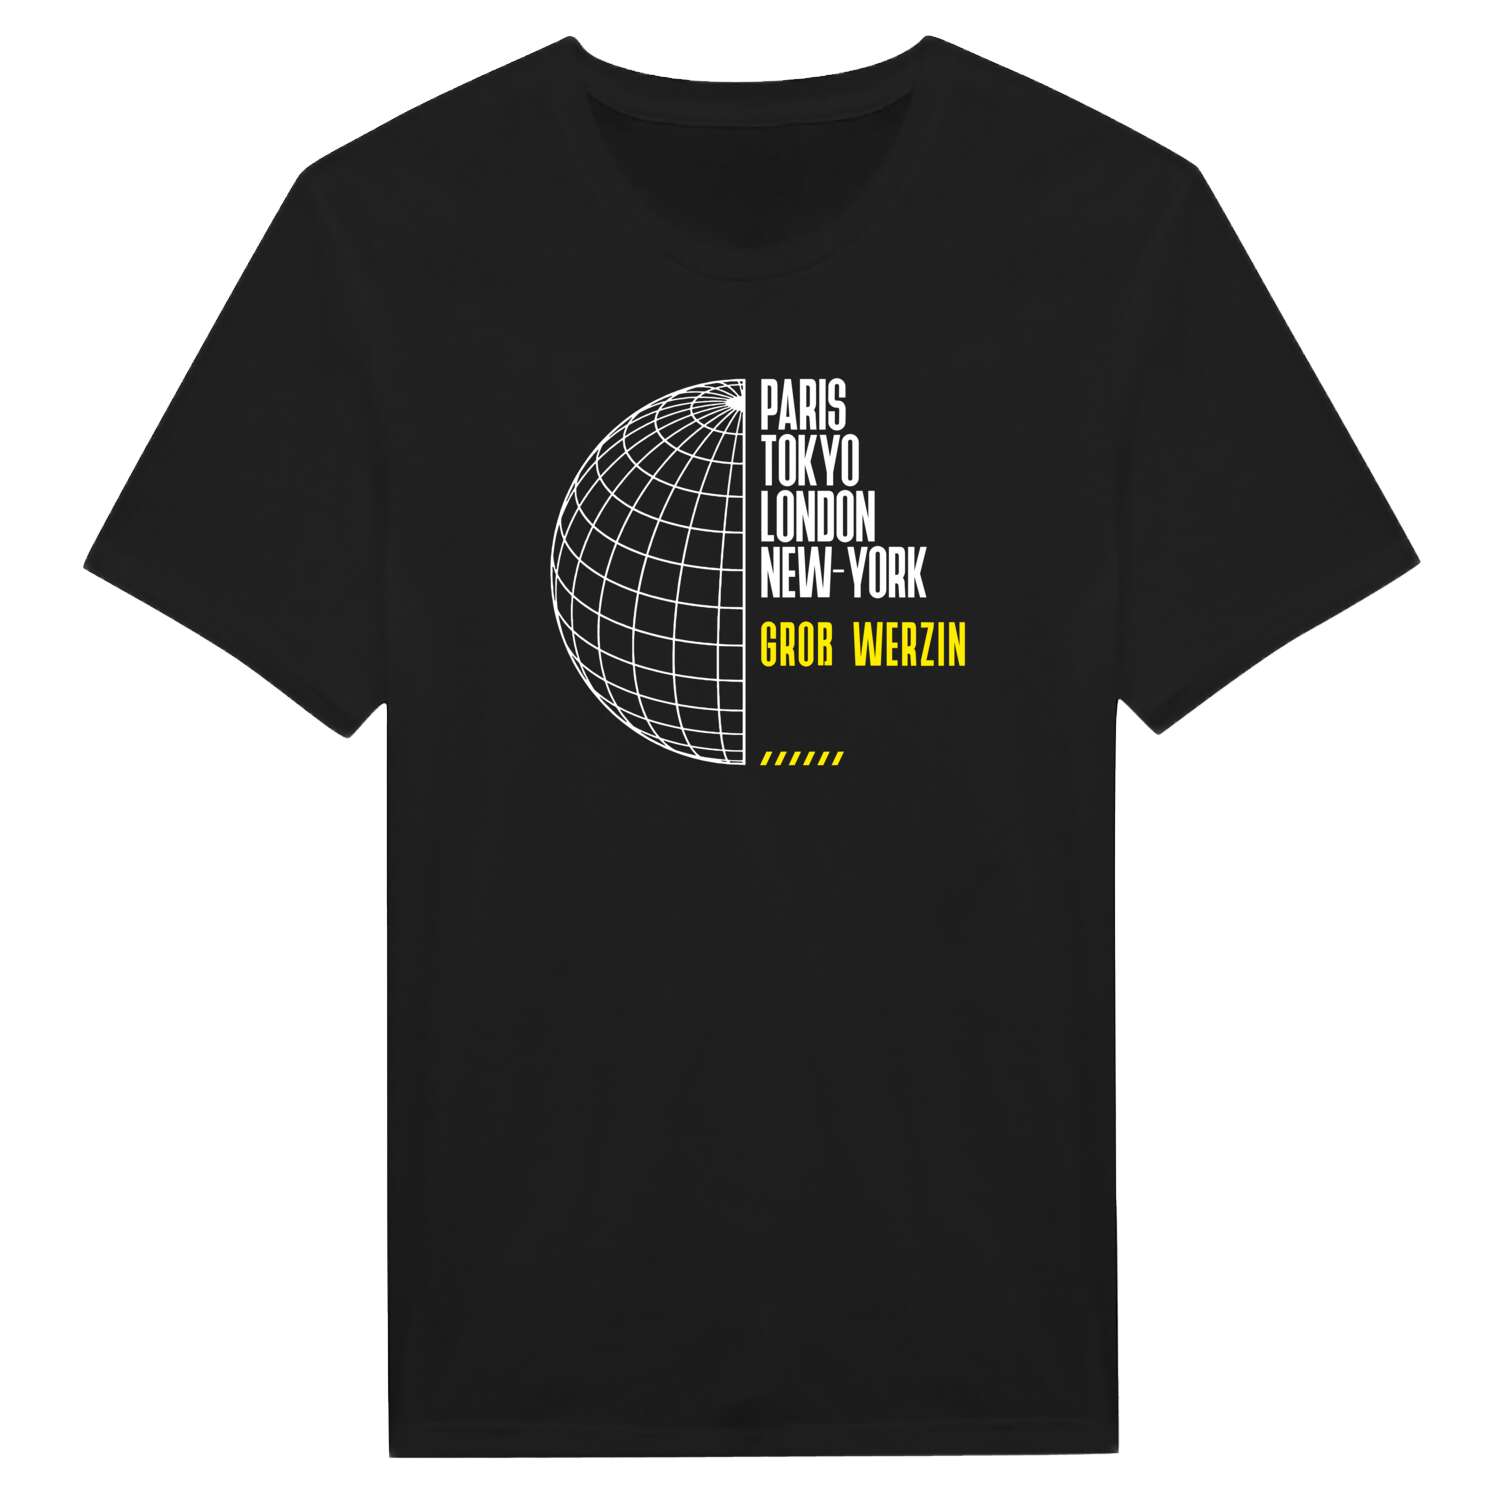 Groß Werzin T-Shirt »Paris Tokyo London«